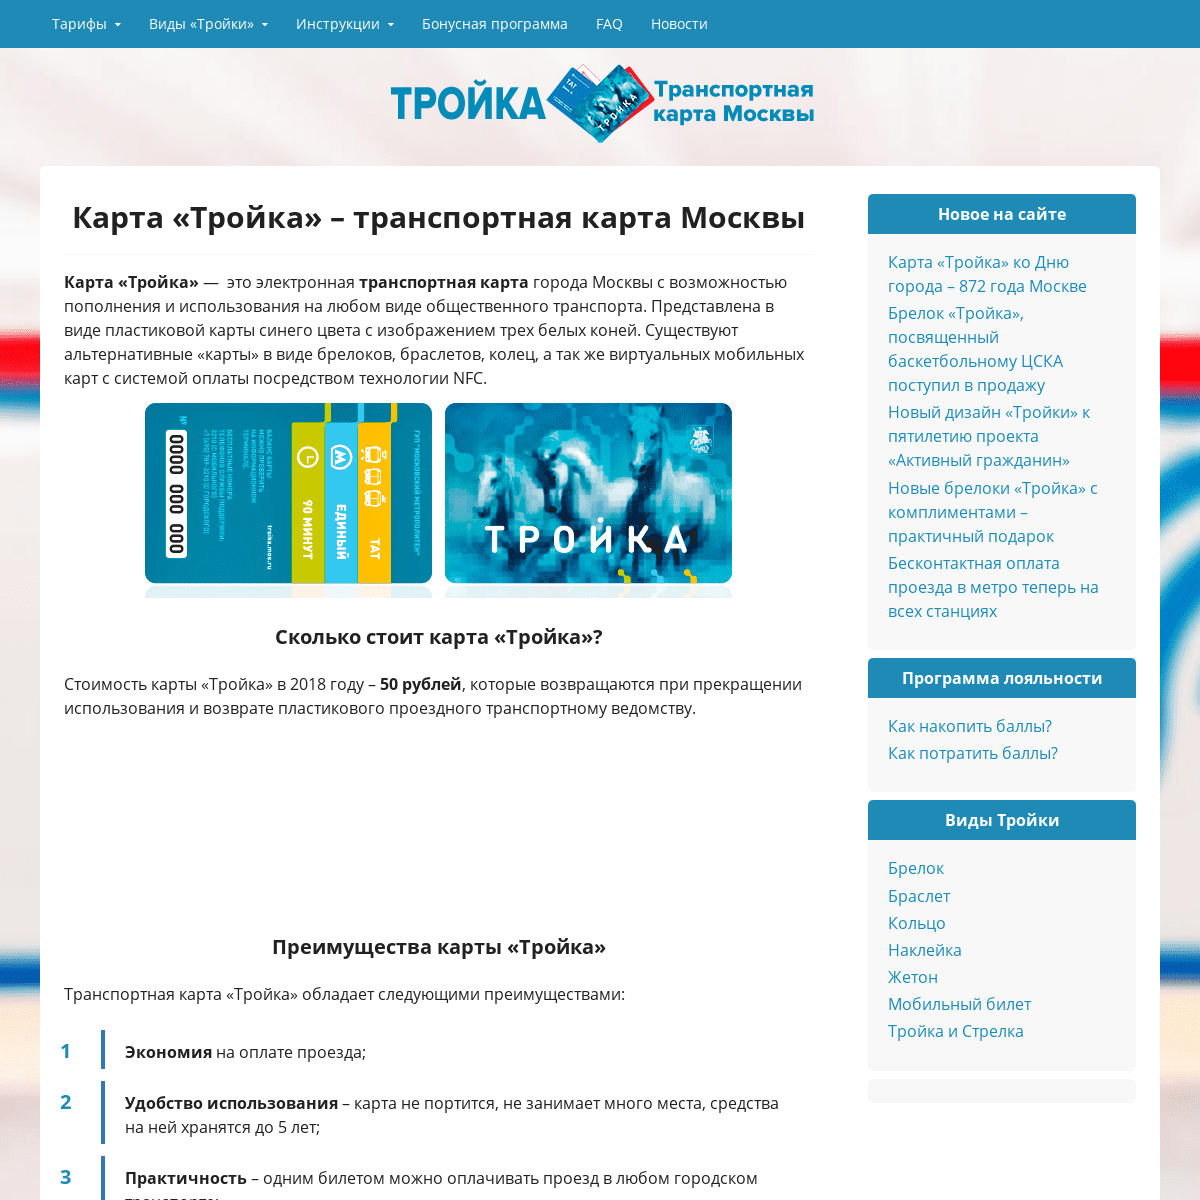 Карта «Тройка» – транспортная карта Москвы, единый билет